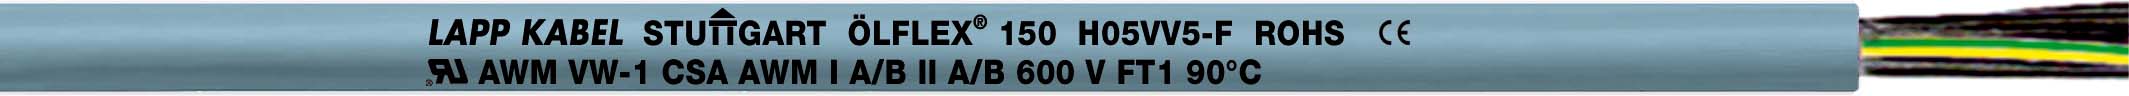 Lapp Kabel&Leitung ÖLFLEX 150 QUATTRO 3G0,5 0015003 T600